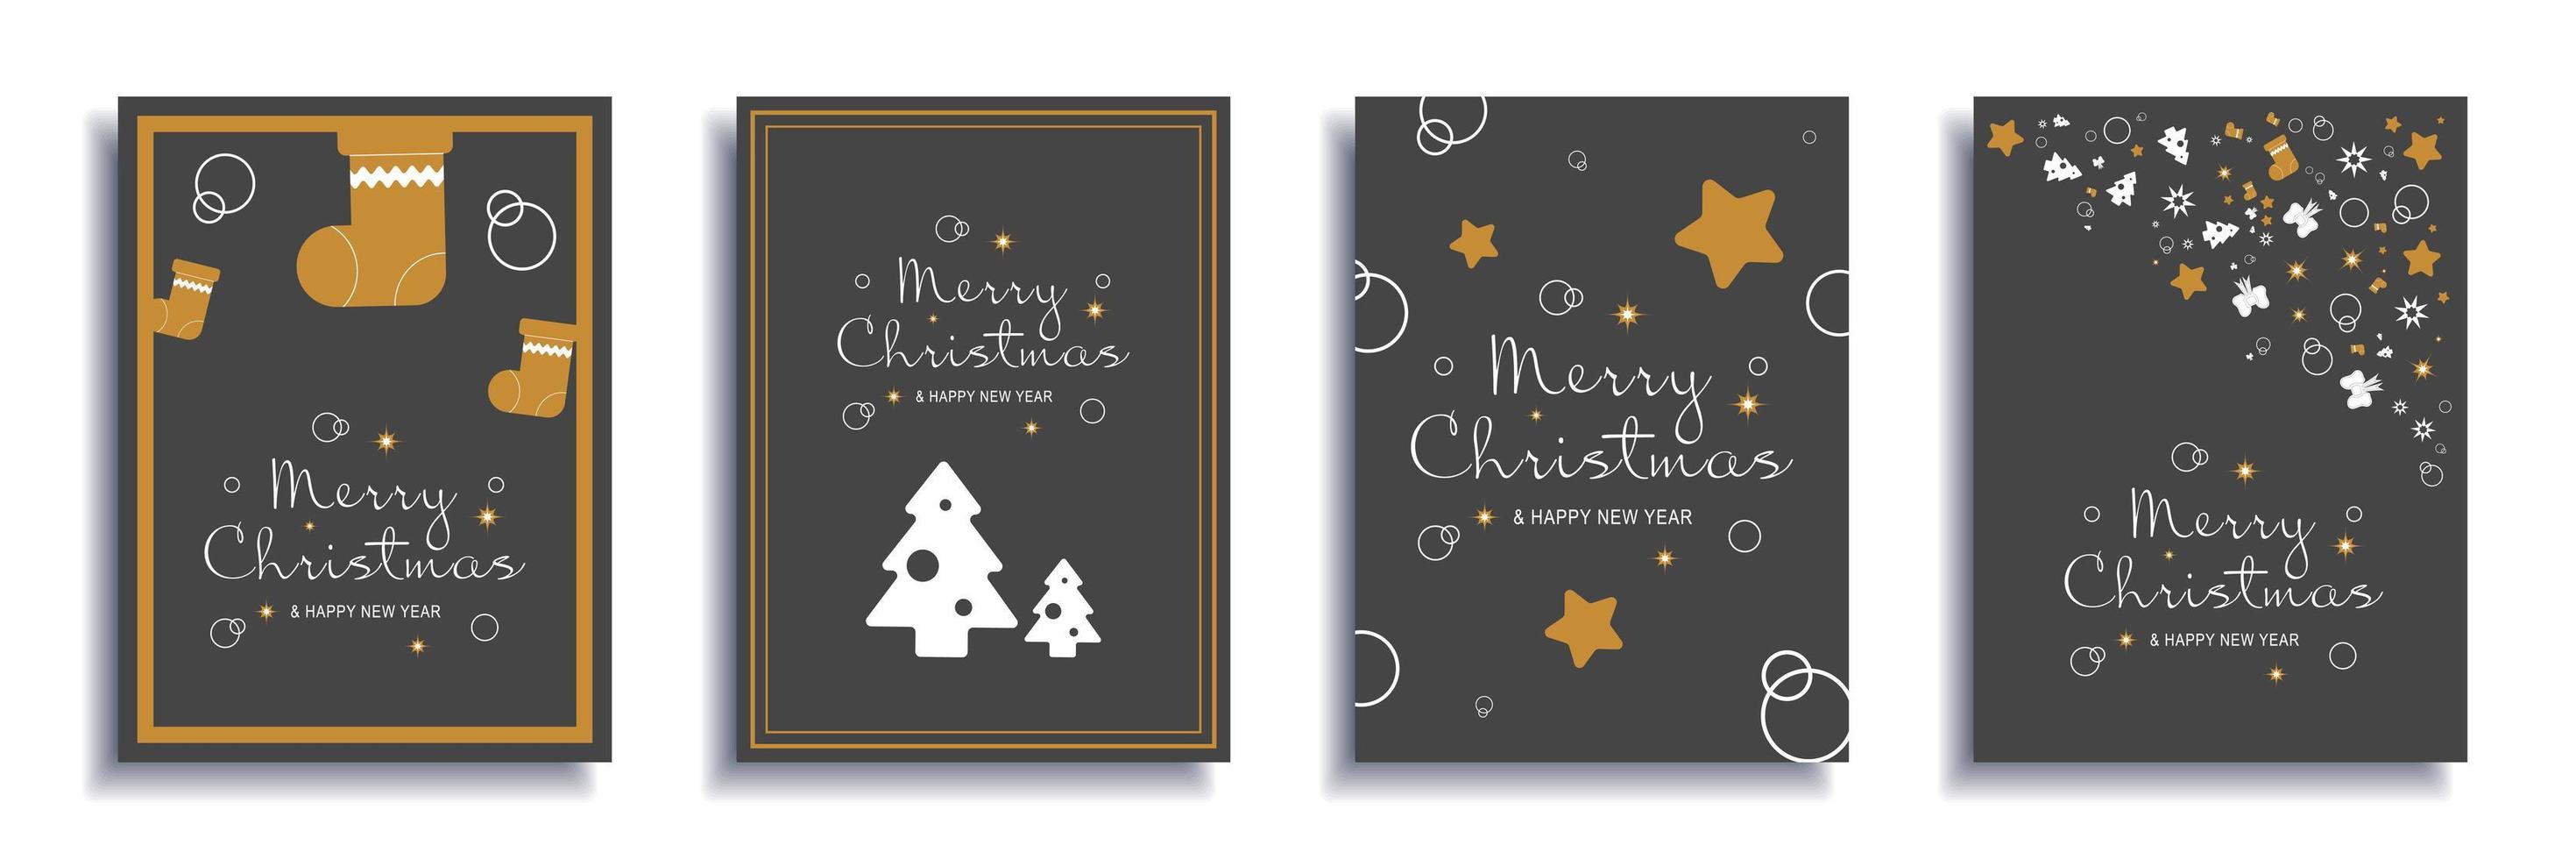 vrolijk kerstfeest en nieuwjaar 2022 brochure covers set. xmas minimaal bannerontwerp met gouden sokken en sterren, witte bomen, feestelijke randen. vectorillustratie voor flyer, poster of wenskaart vector